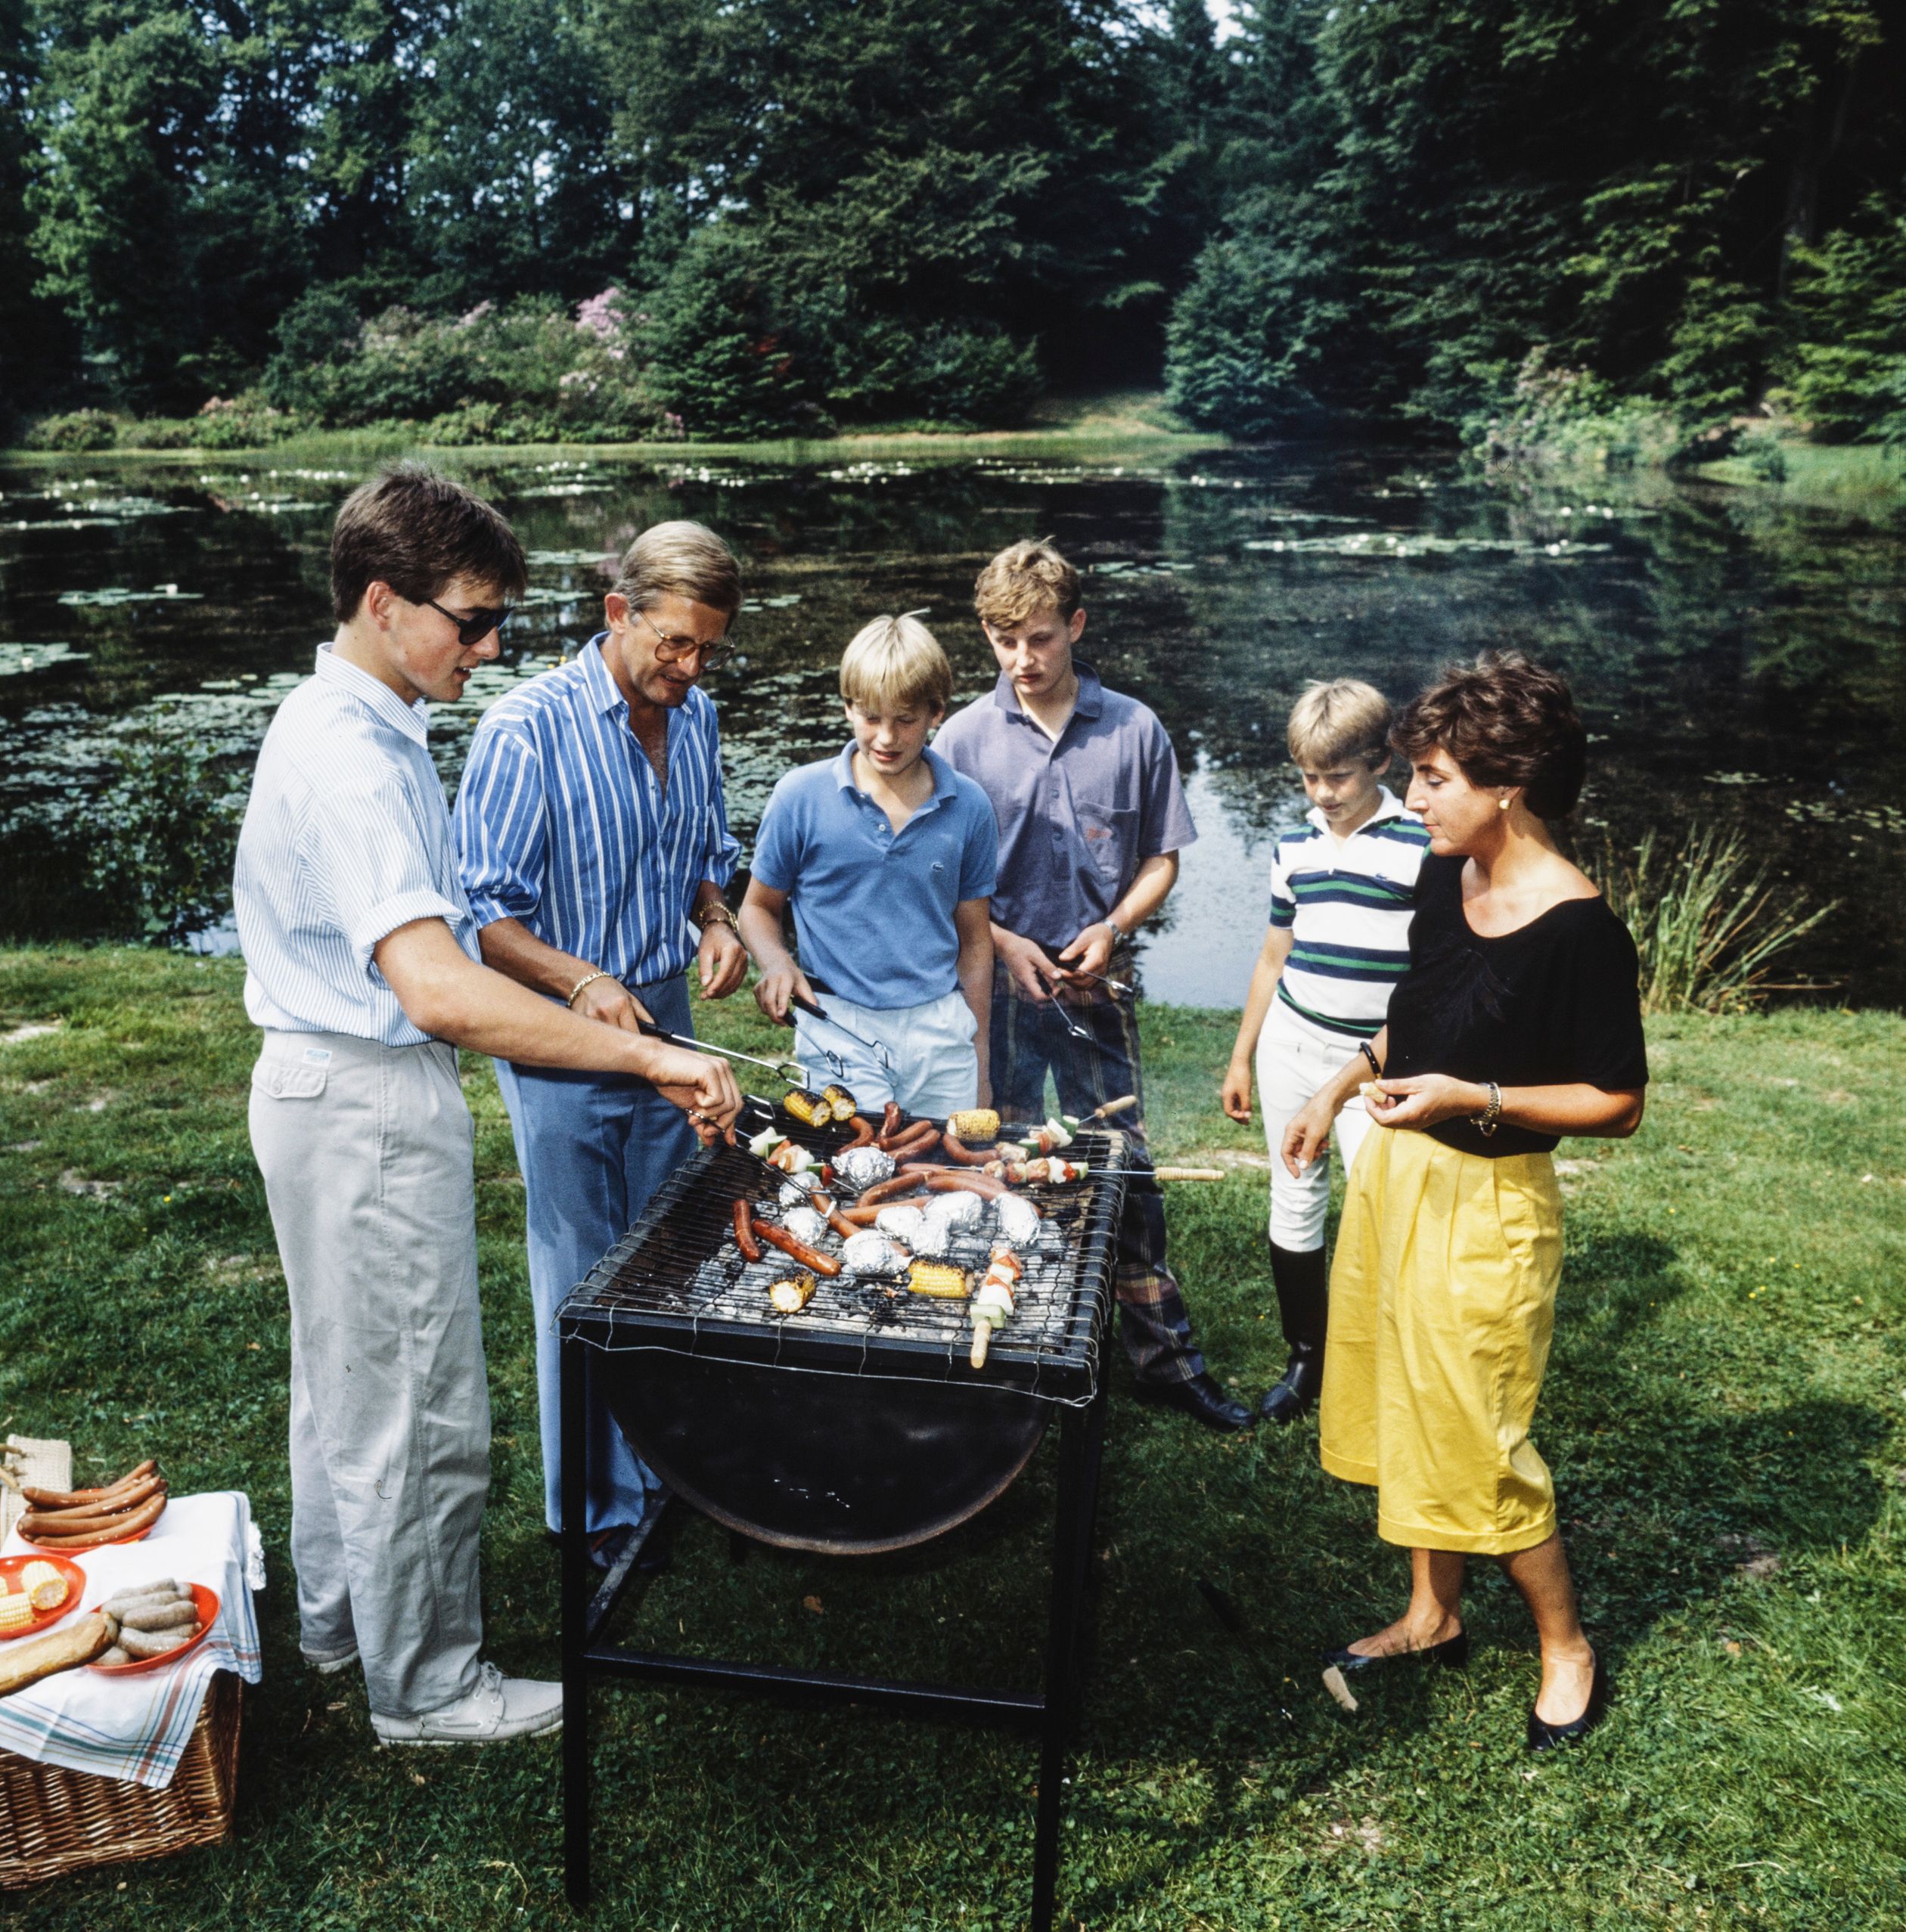 Het gezin van prinses Margriet en Pieter van Vollenhoven aan de barbecue tijdens een fotosessie in